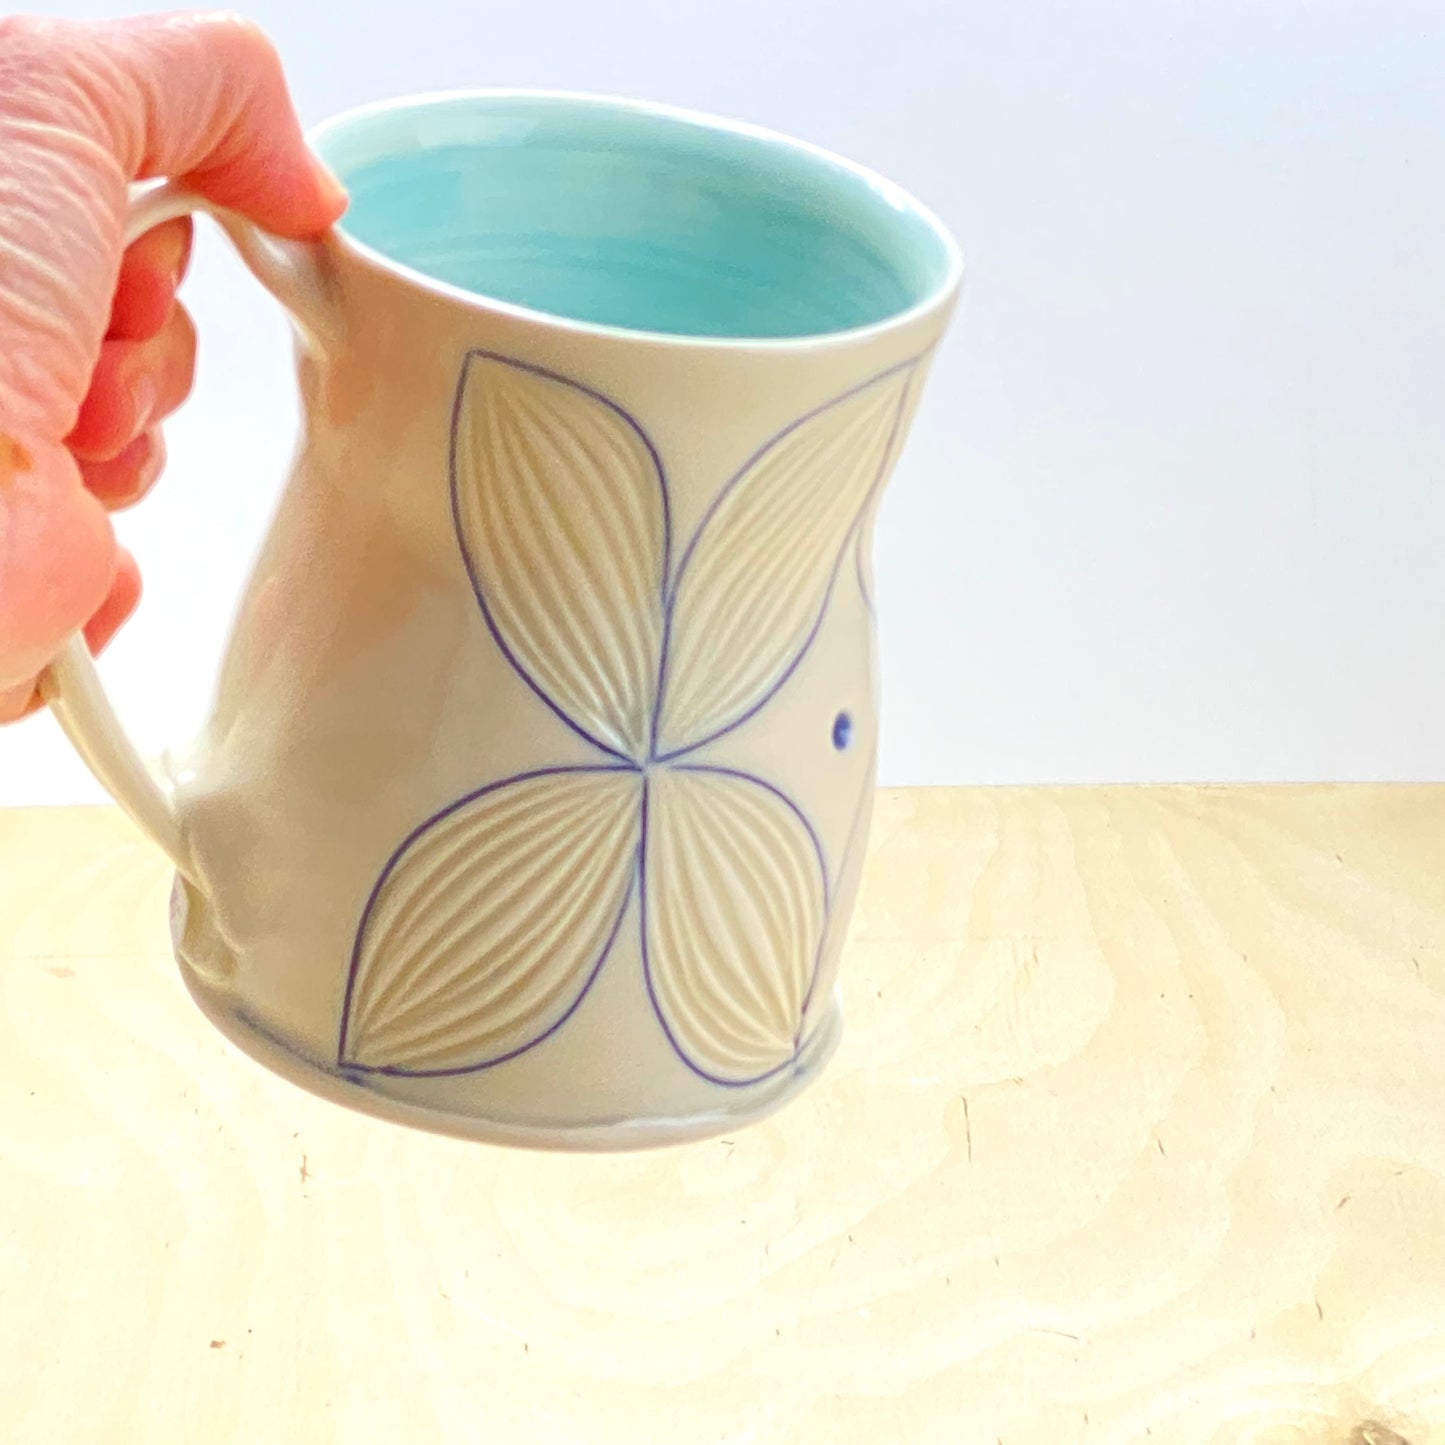 Mug with Pattern